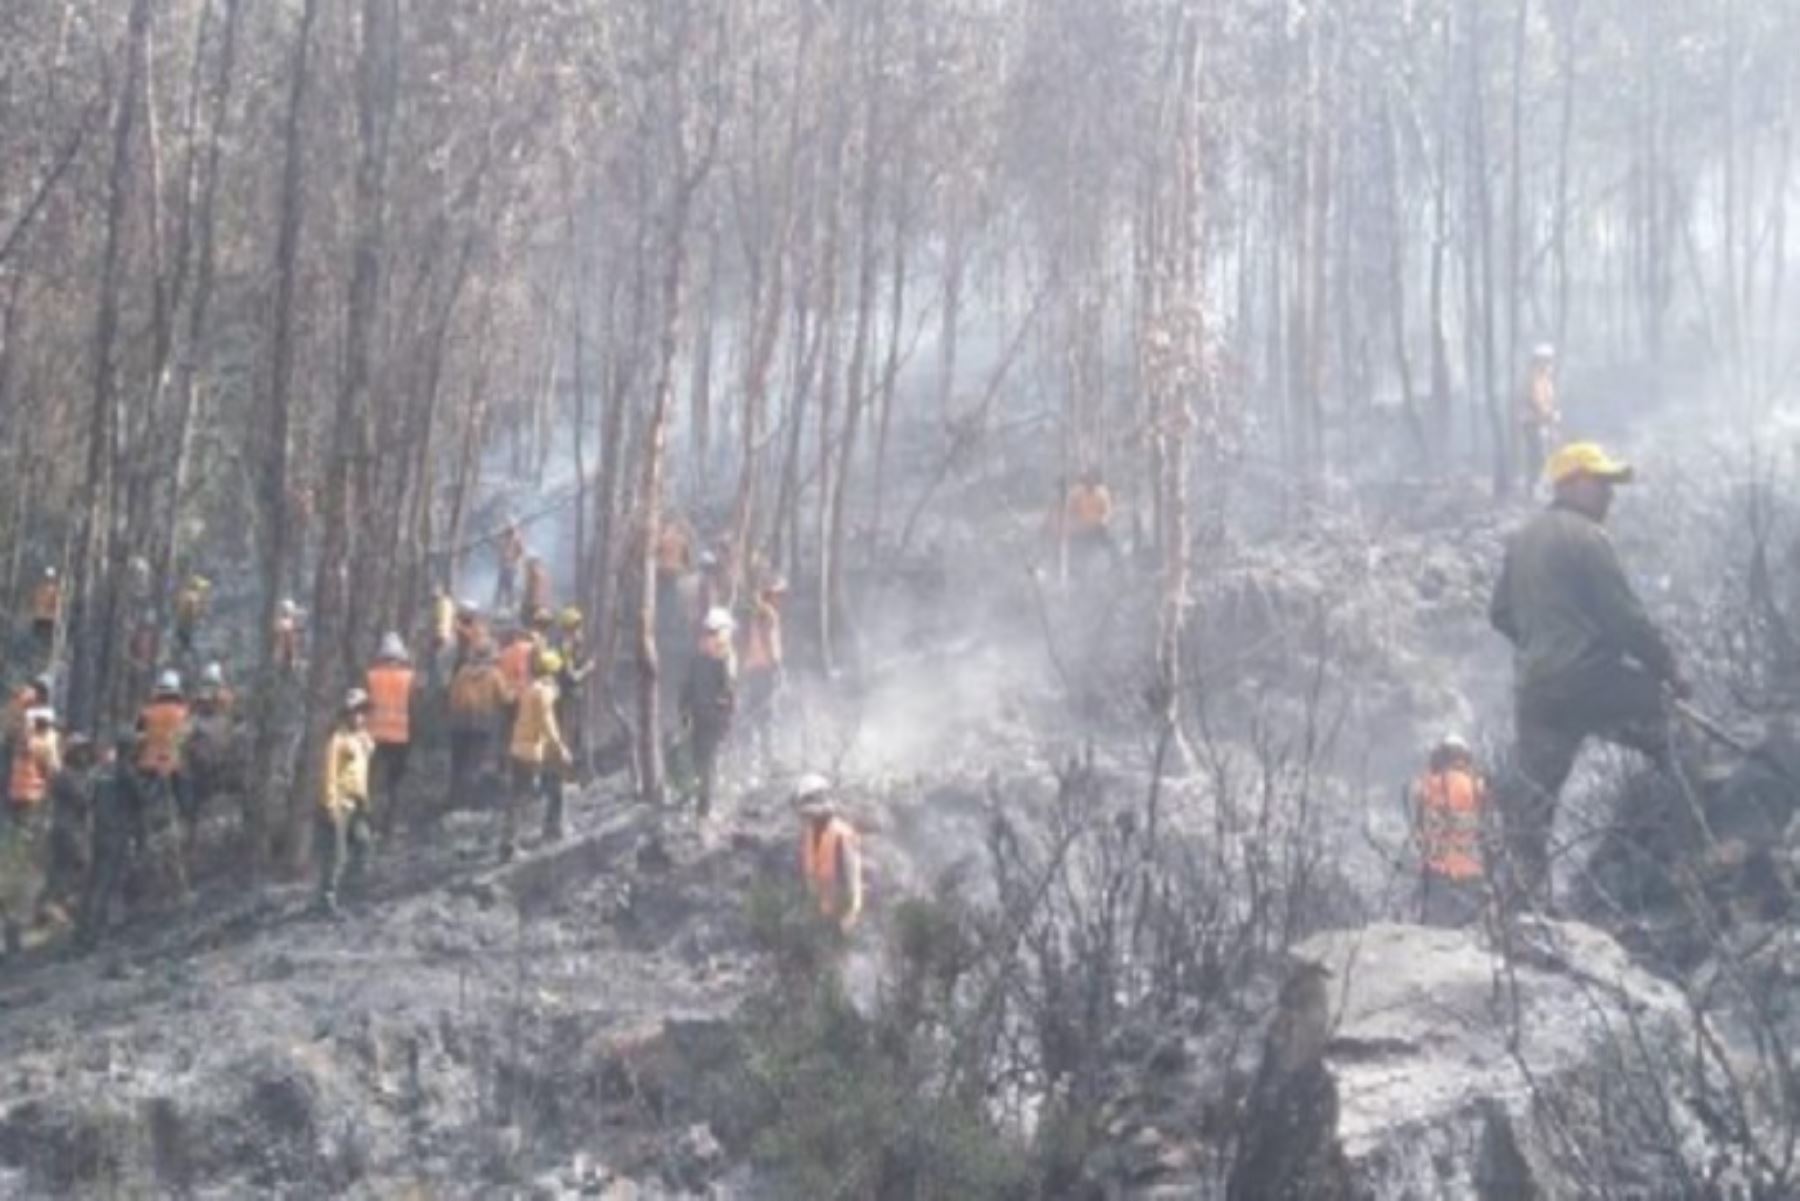 Ya fue controlado el incendio forestal que se registra desde el 26 de junio en los distritos de Pomacanchi y Acopia, provincia de Acomayo, en Cusco, informó el Servicio Nacional Forestal y de Fauna Silvestre (Serfor); sin embargo, aún se continúa trabajando en la zona hasta su extinción total.